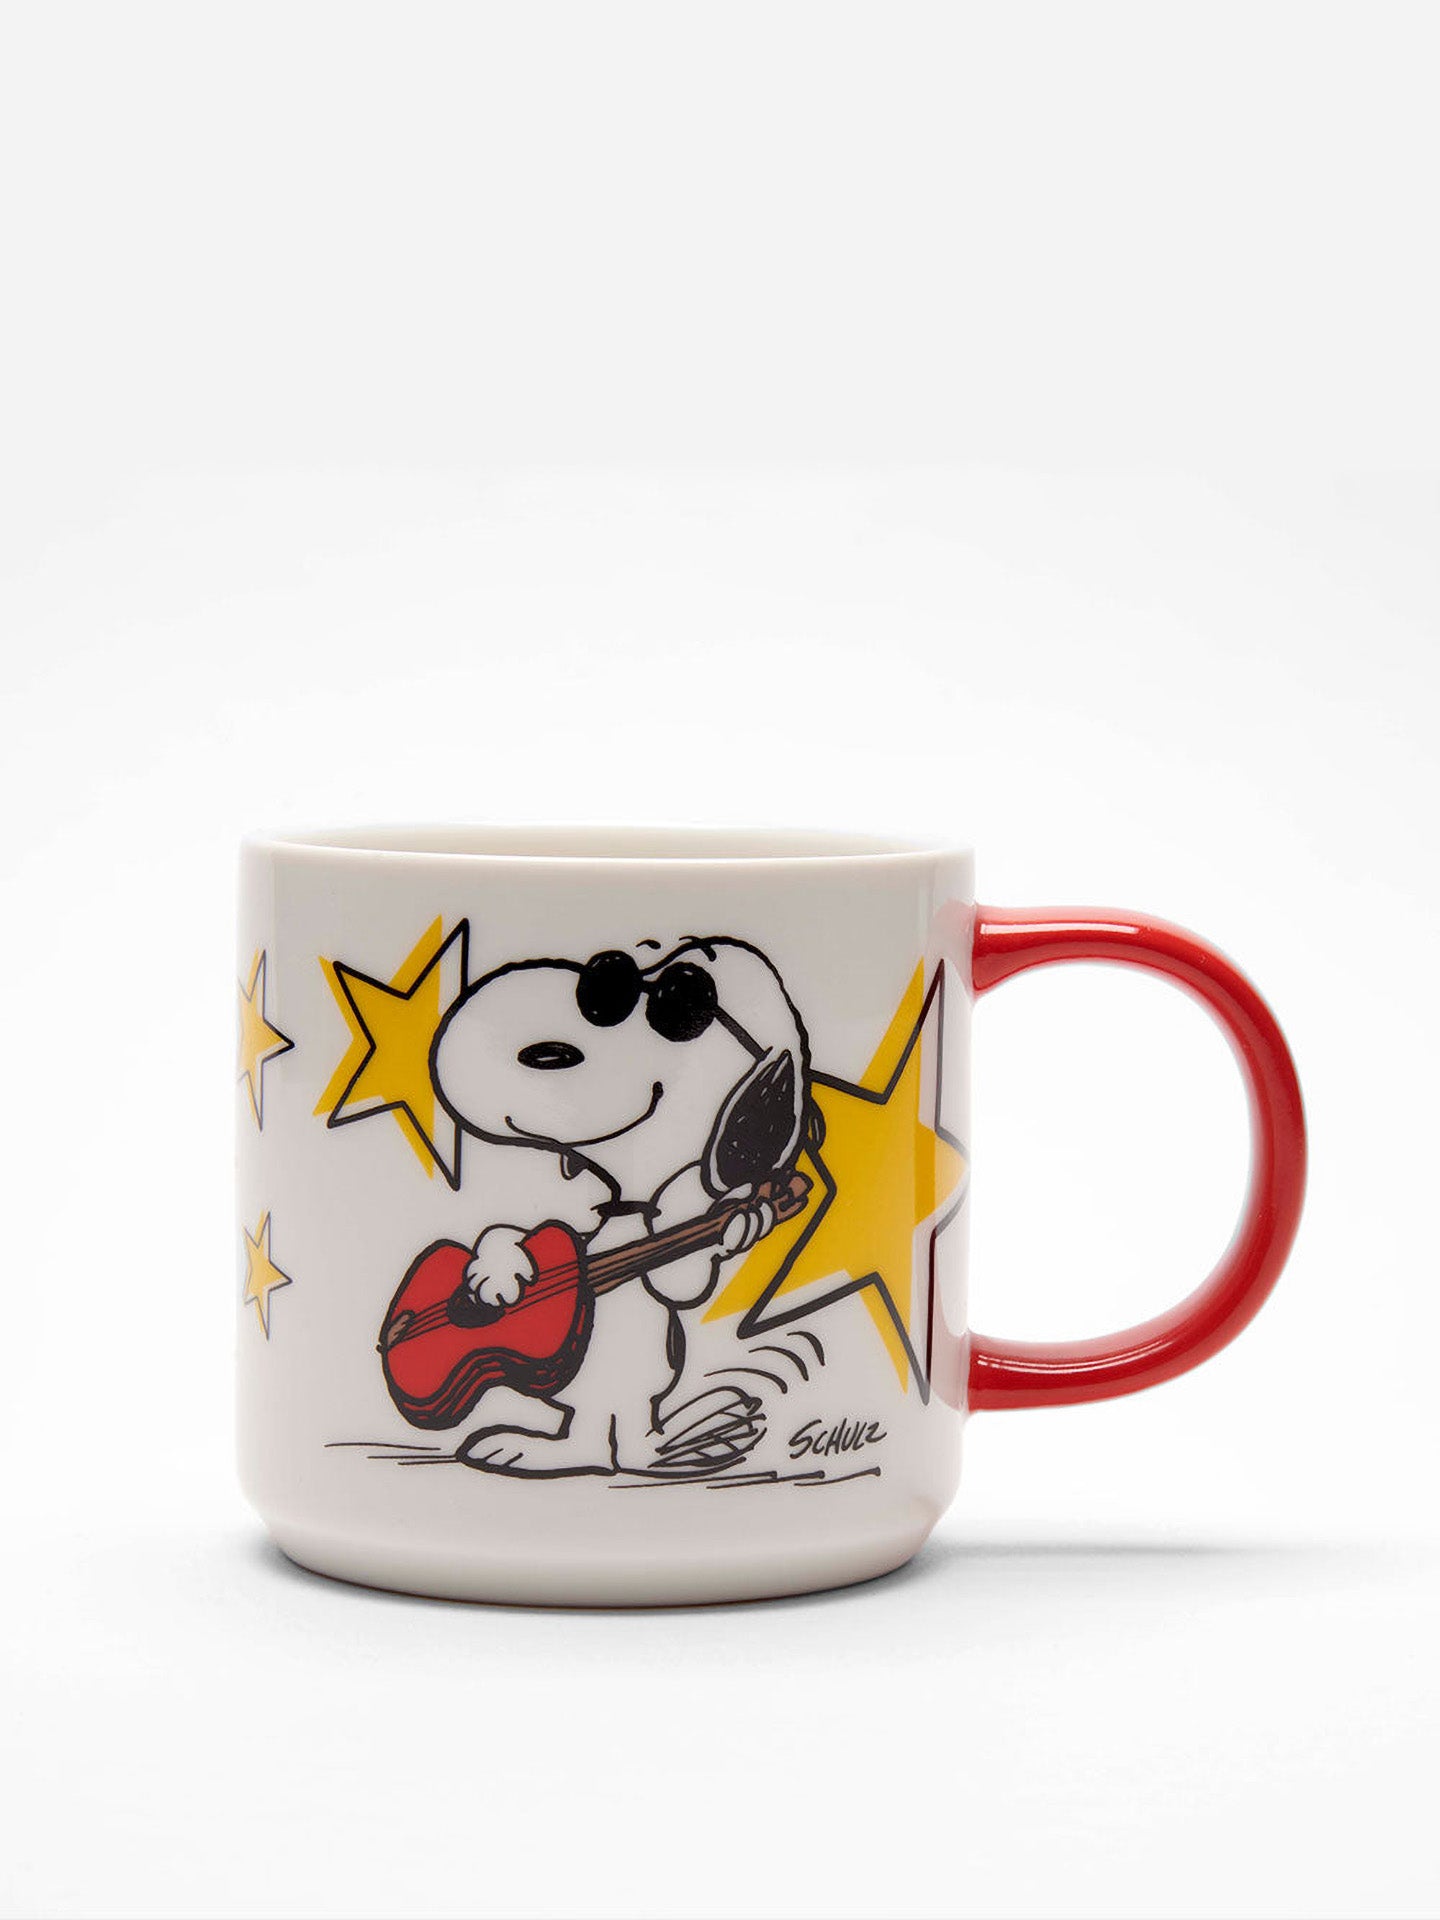 Peanuts mug, Rock Star